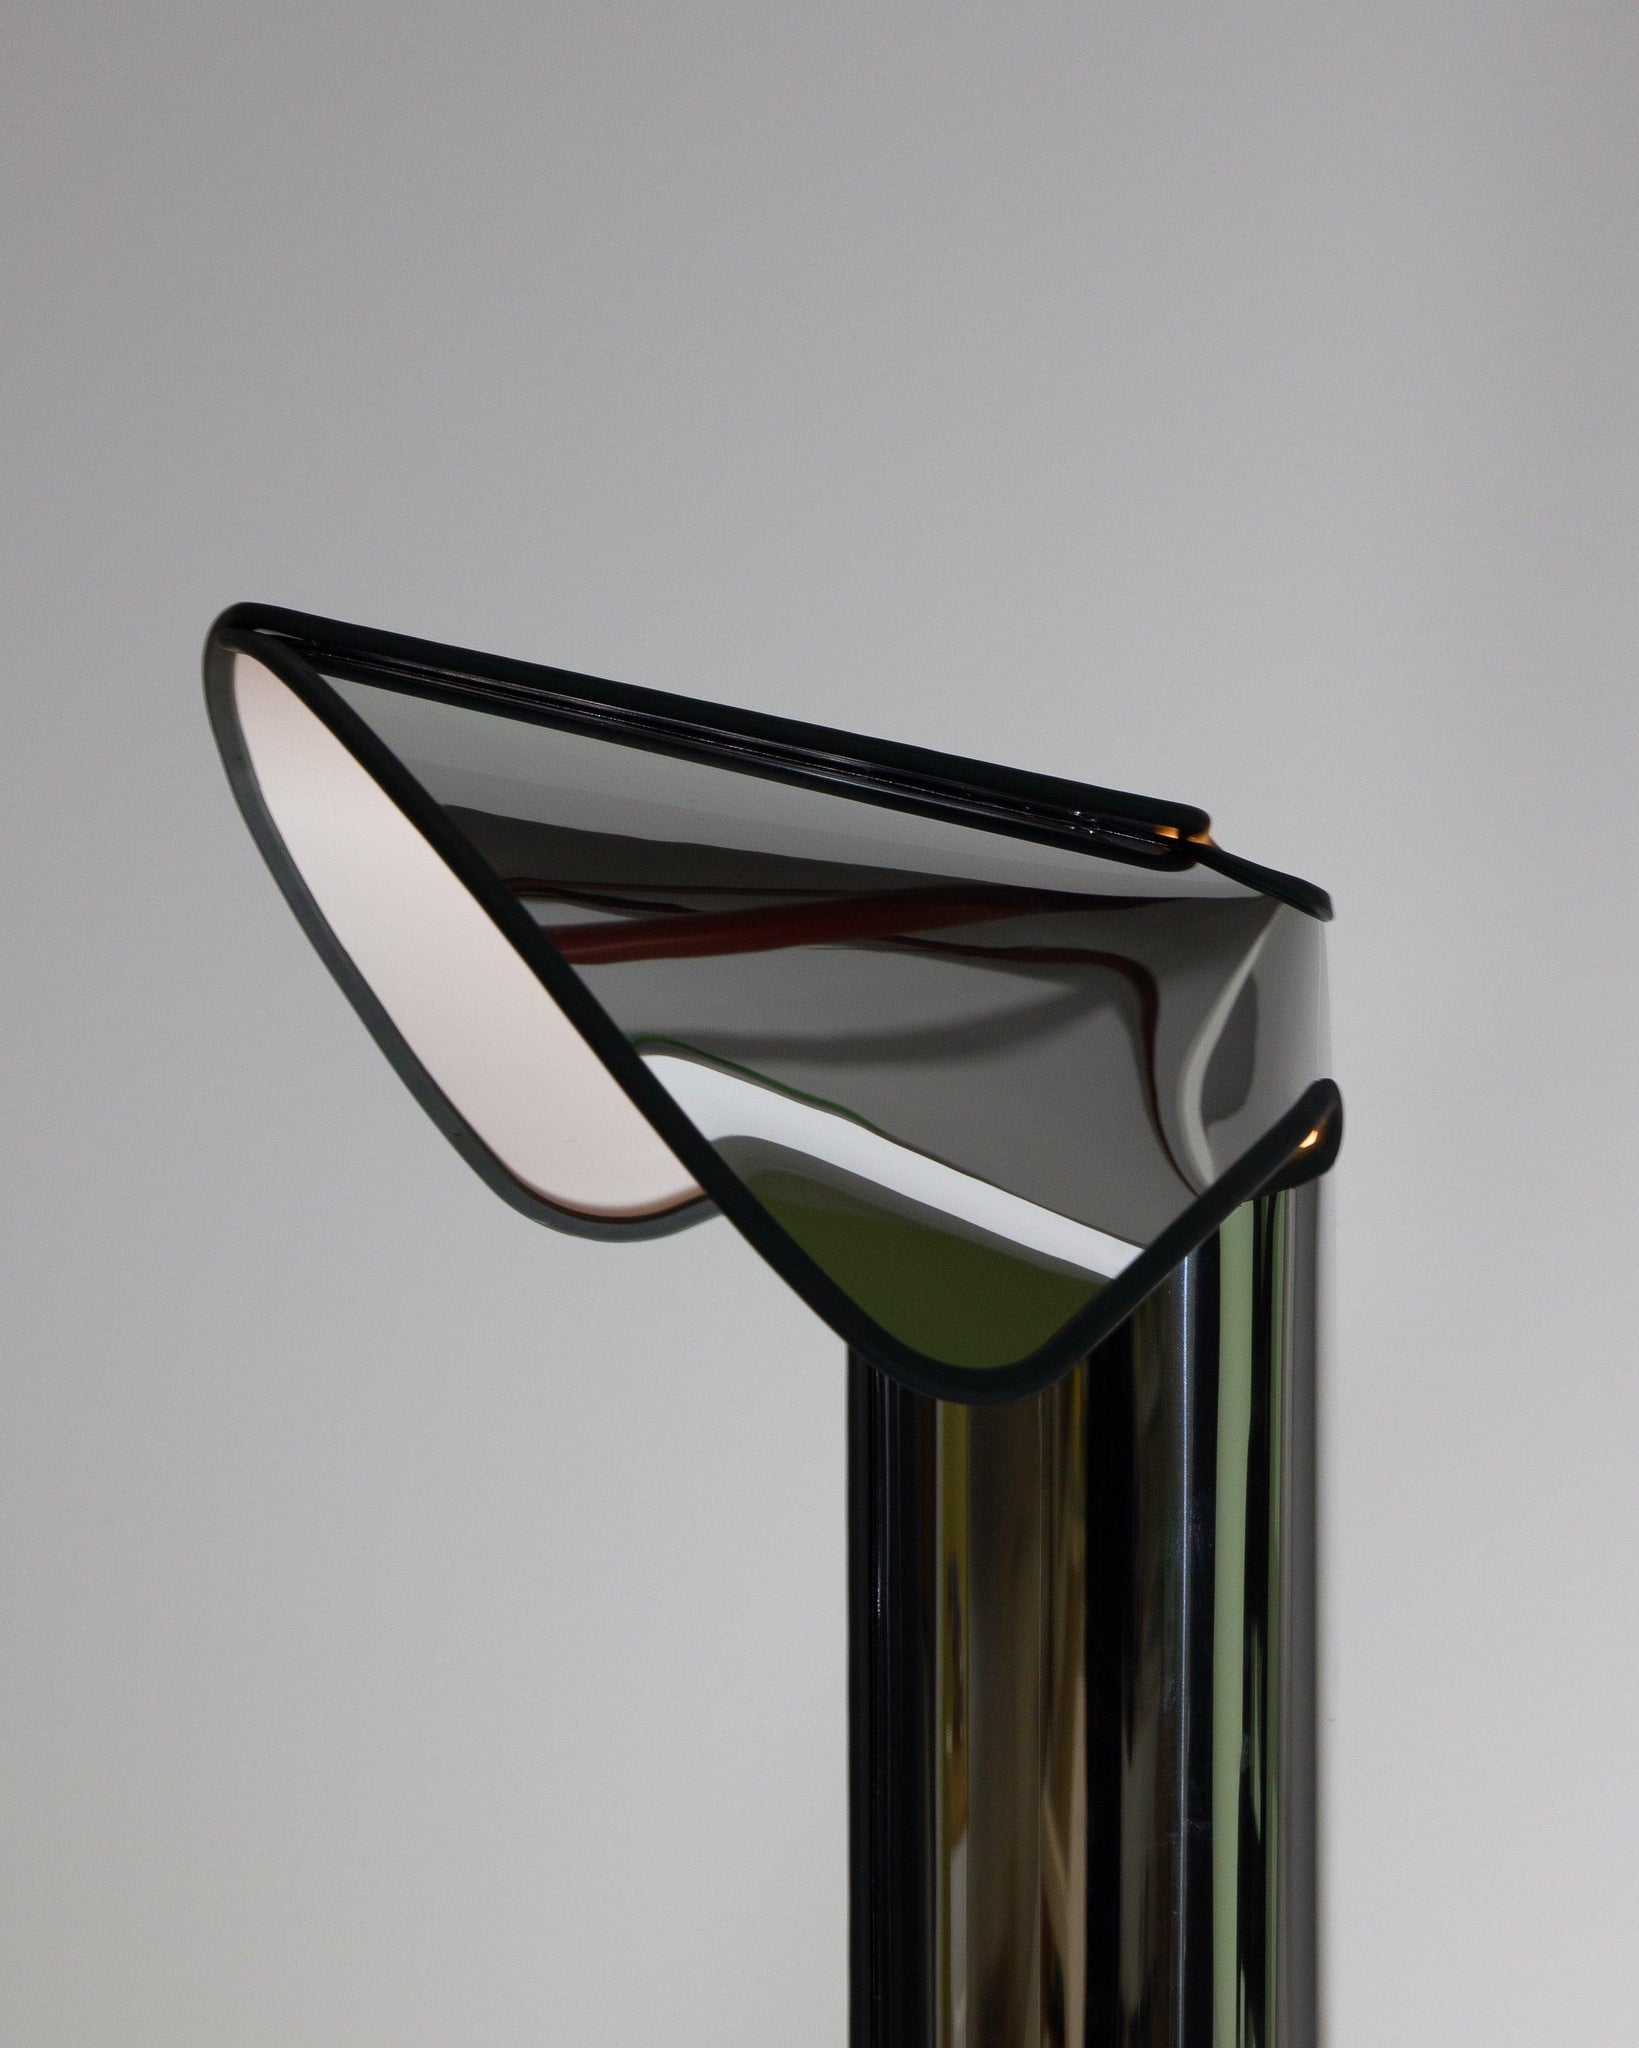 Bi-Rite Studio Chiara Table Lamp by Flos